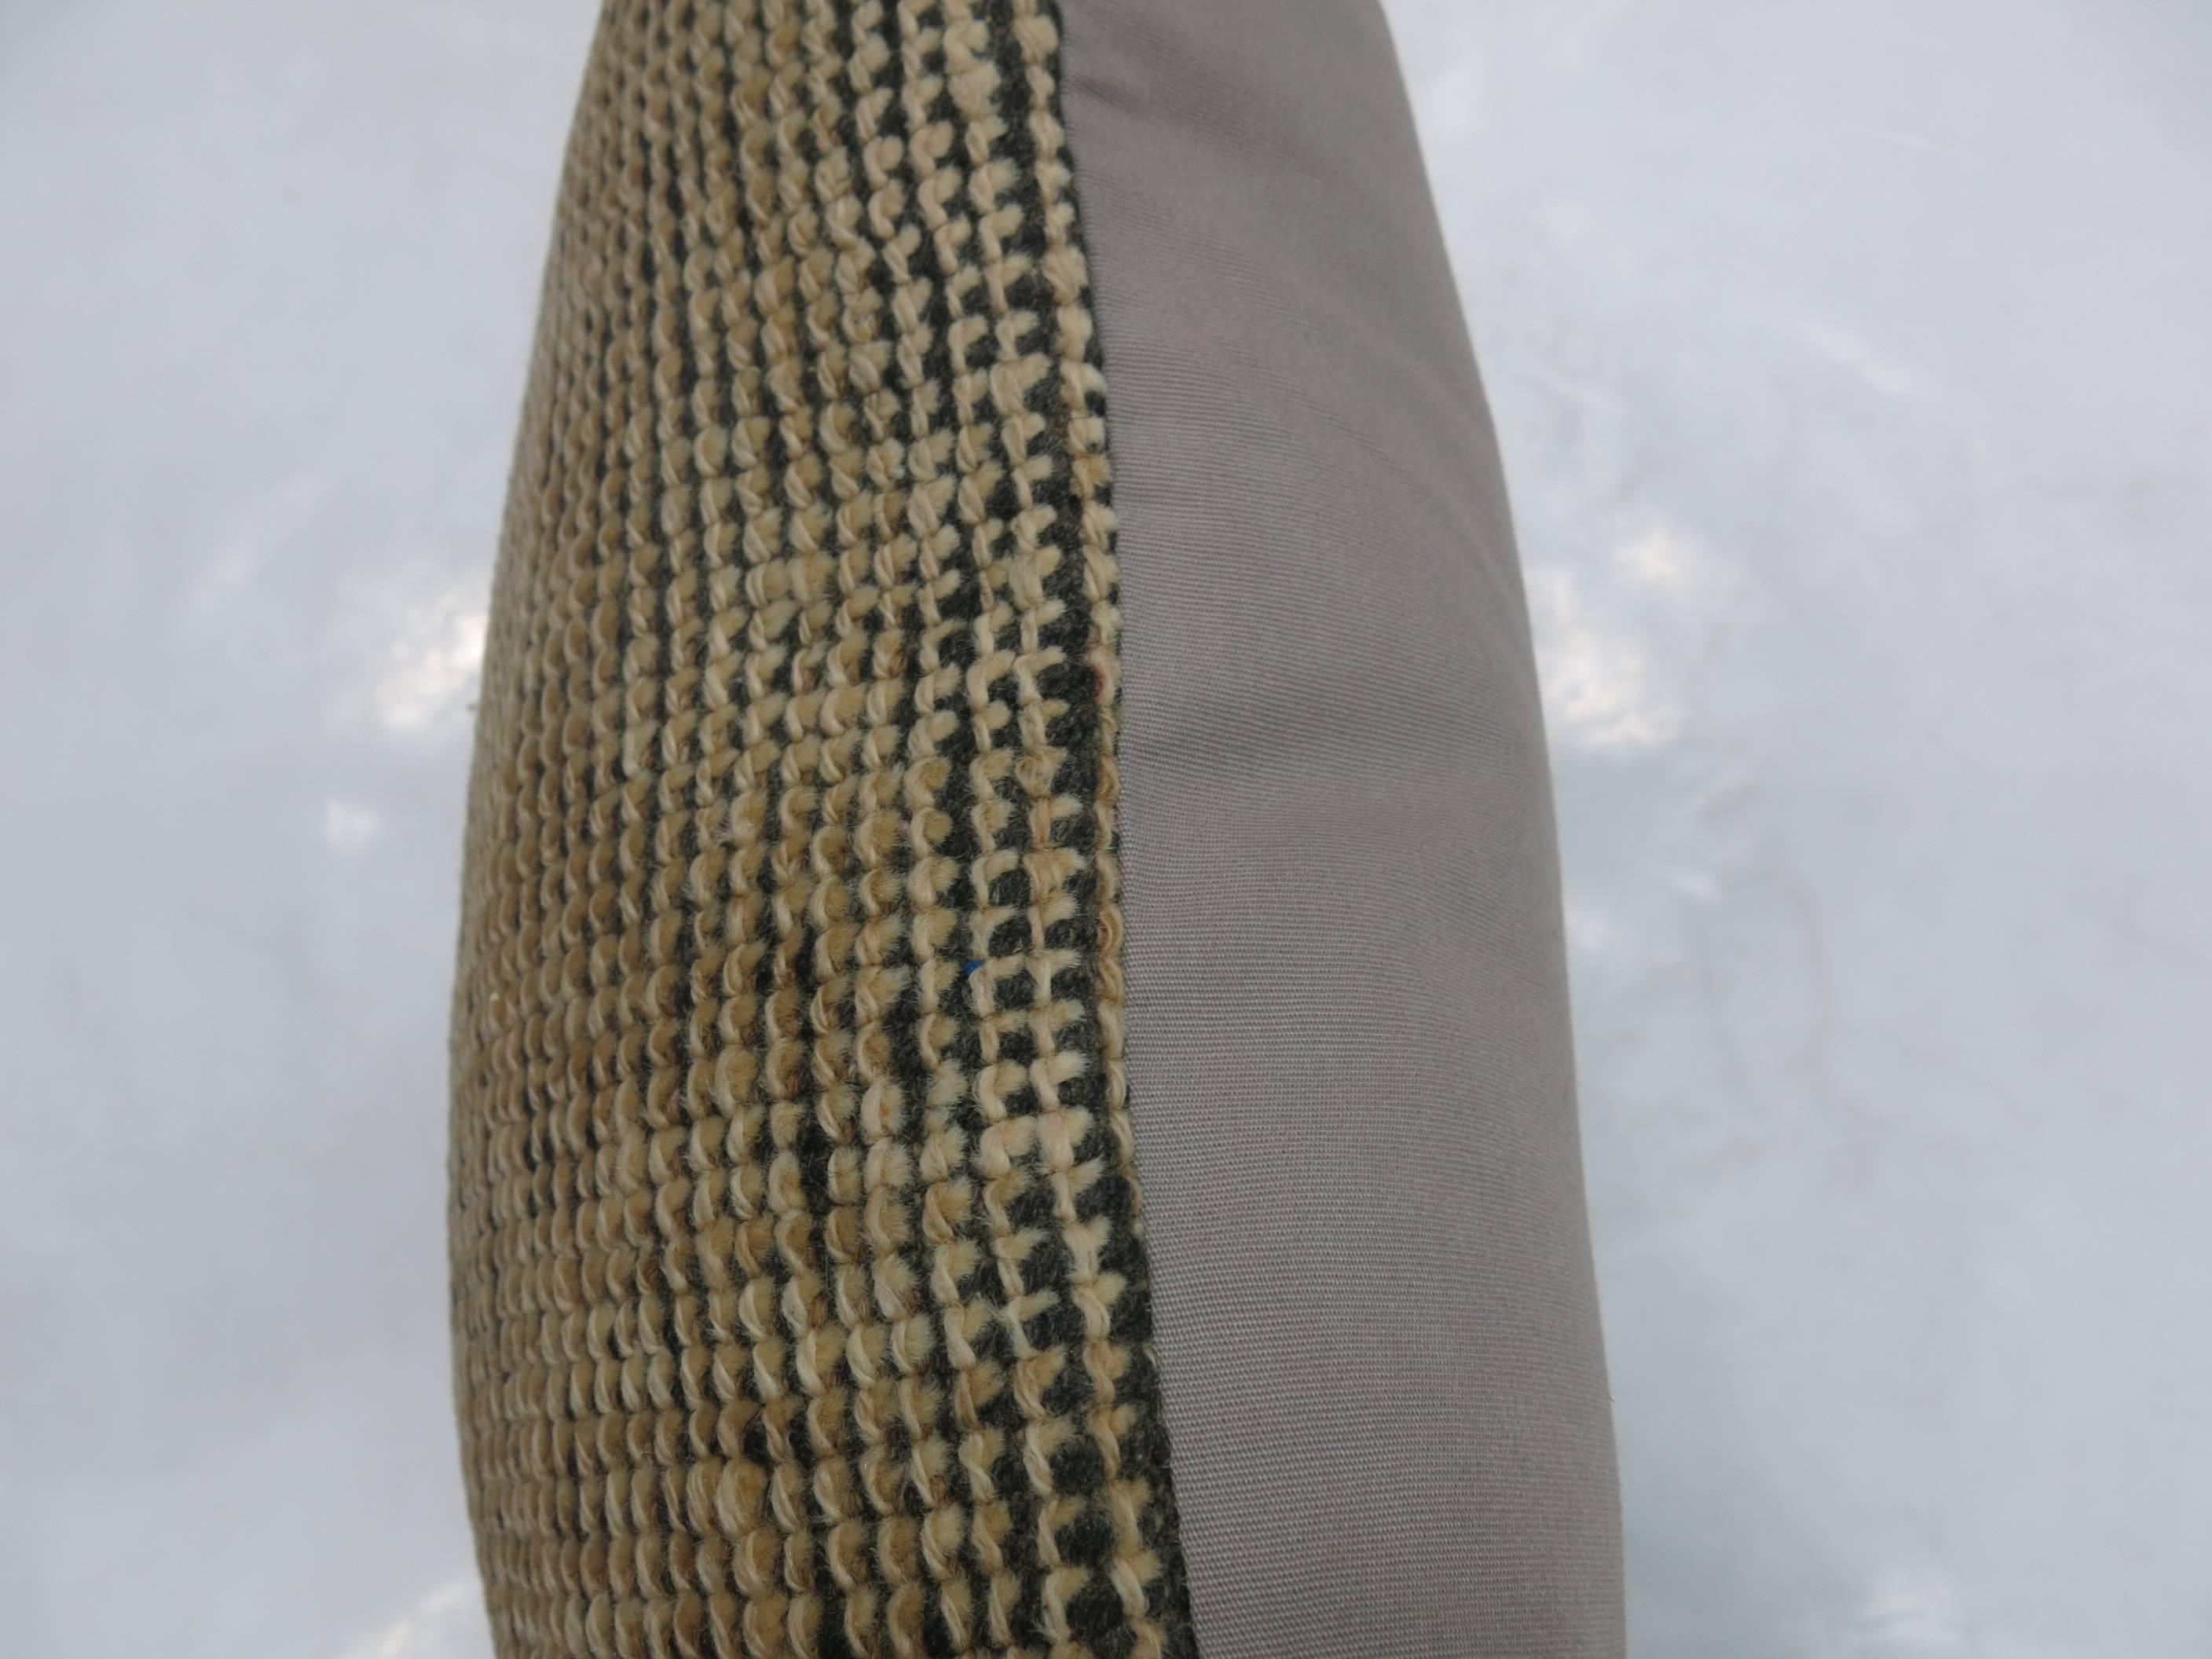 Oreiller fabriqué à partir d'un tapis marocain tissé à plat.

19'' x 20''